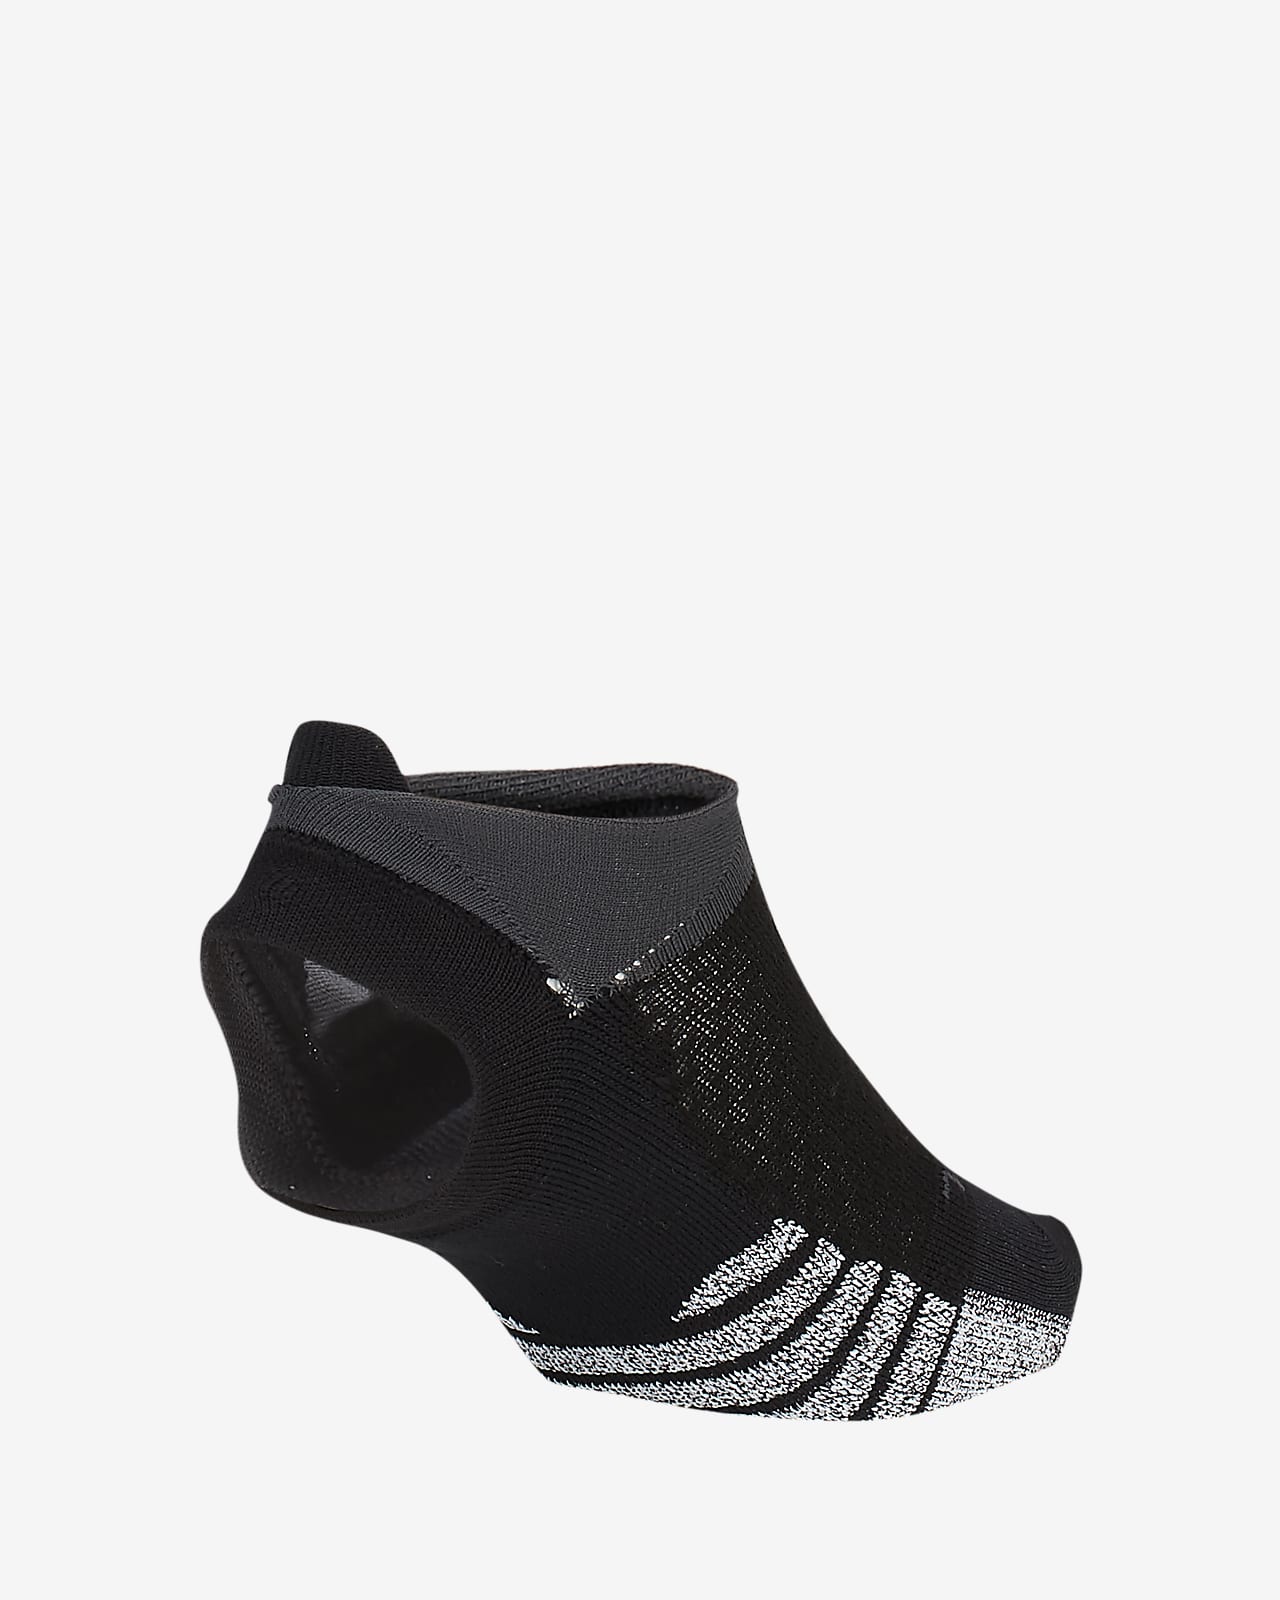 Studio Women's Toeless Footie Socks. Nike.com